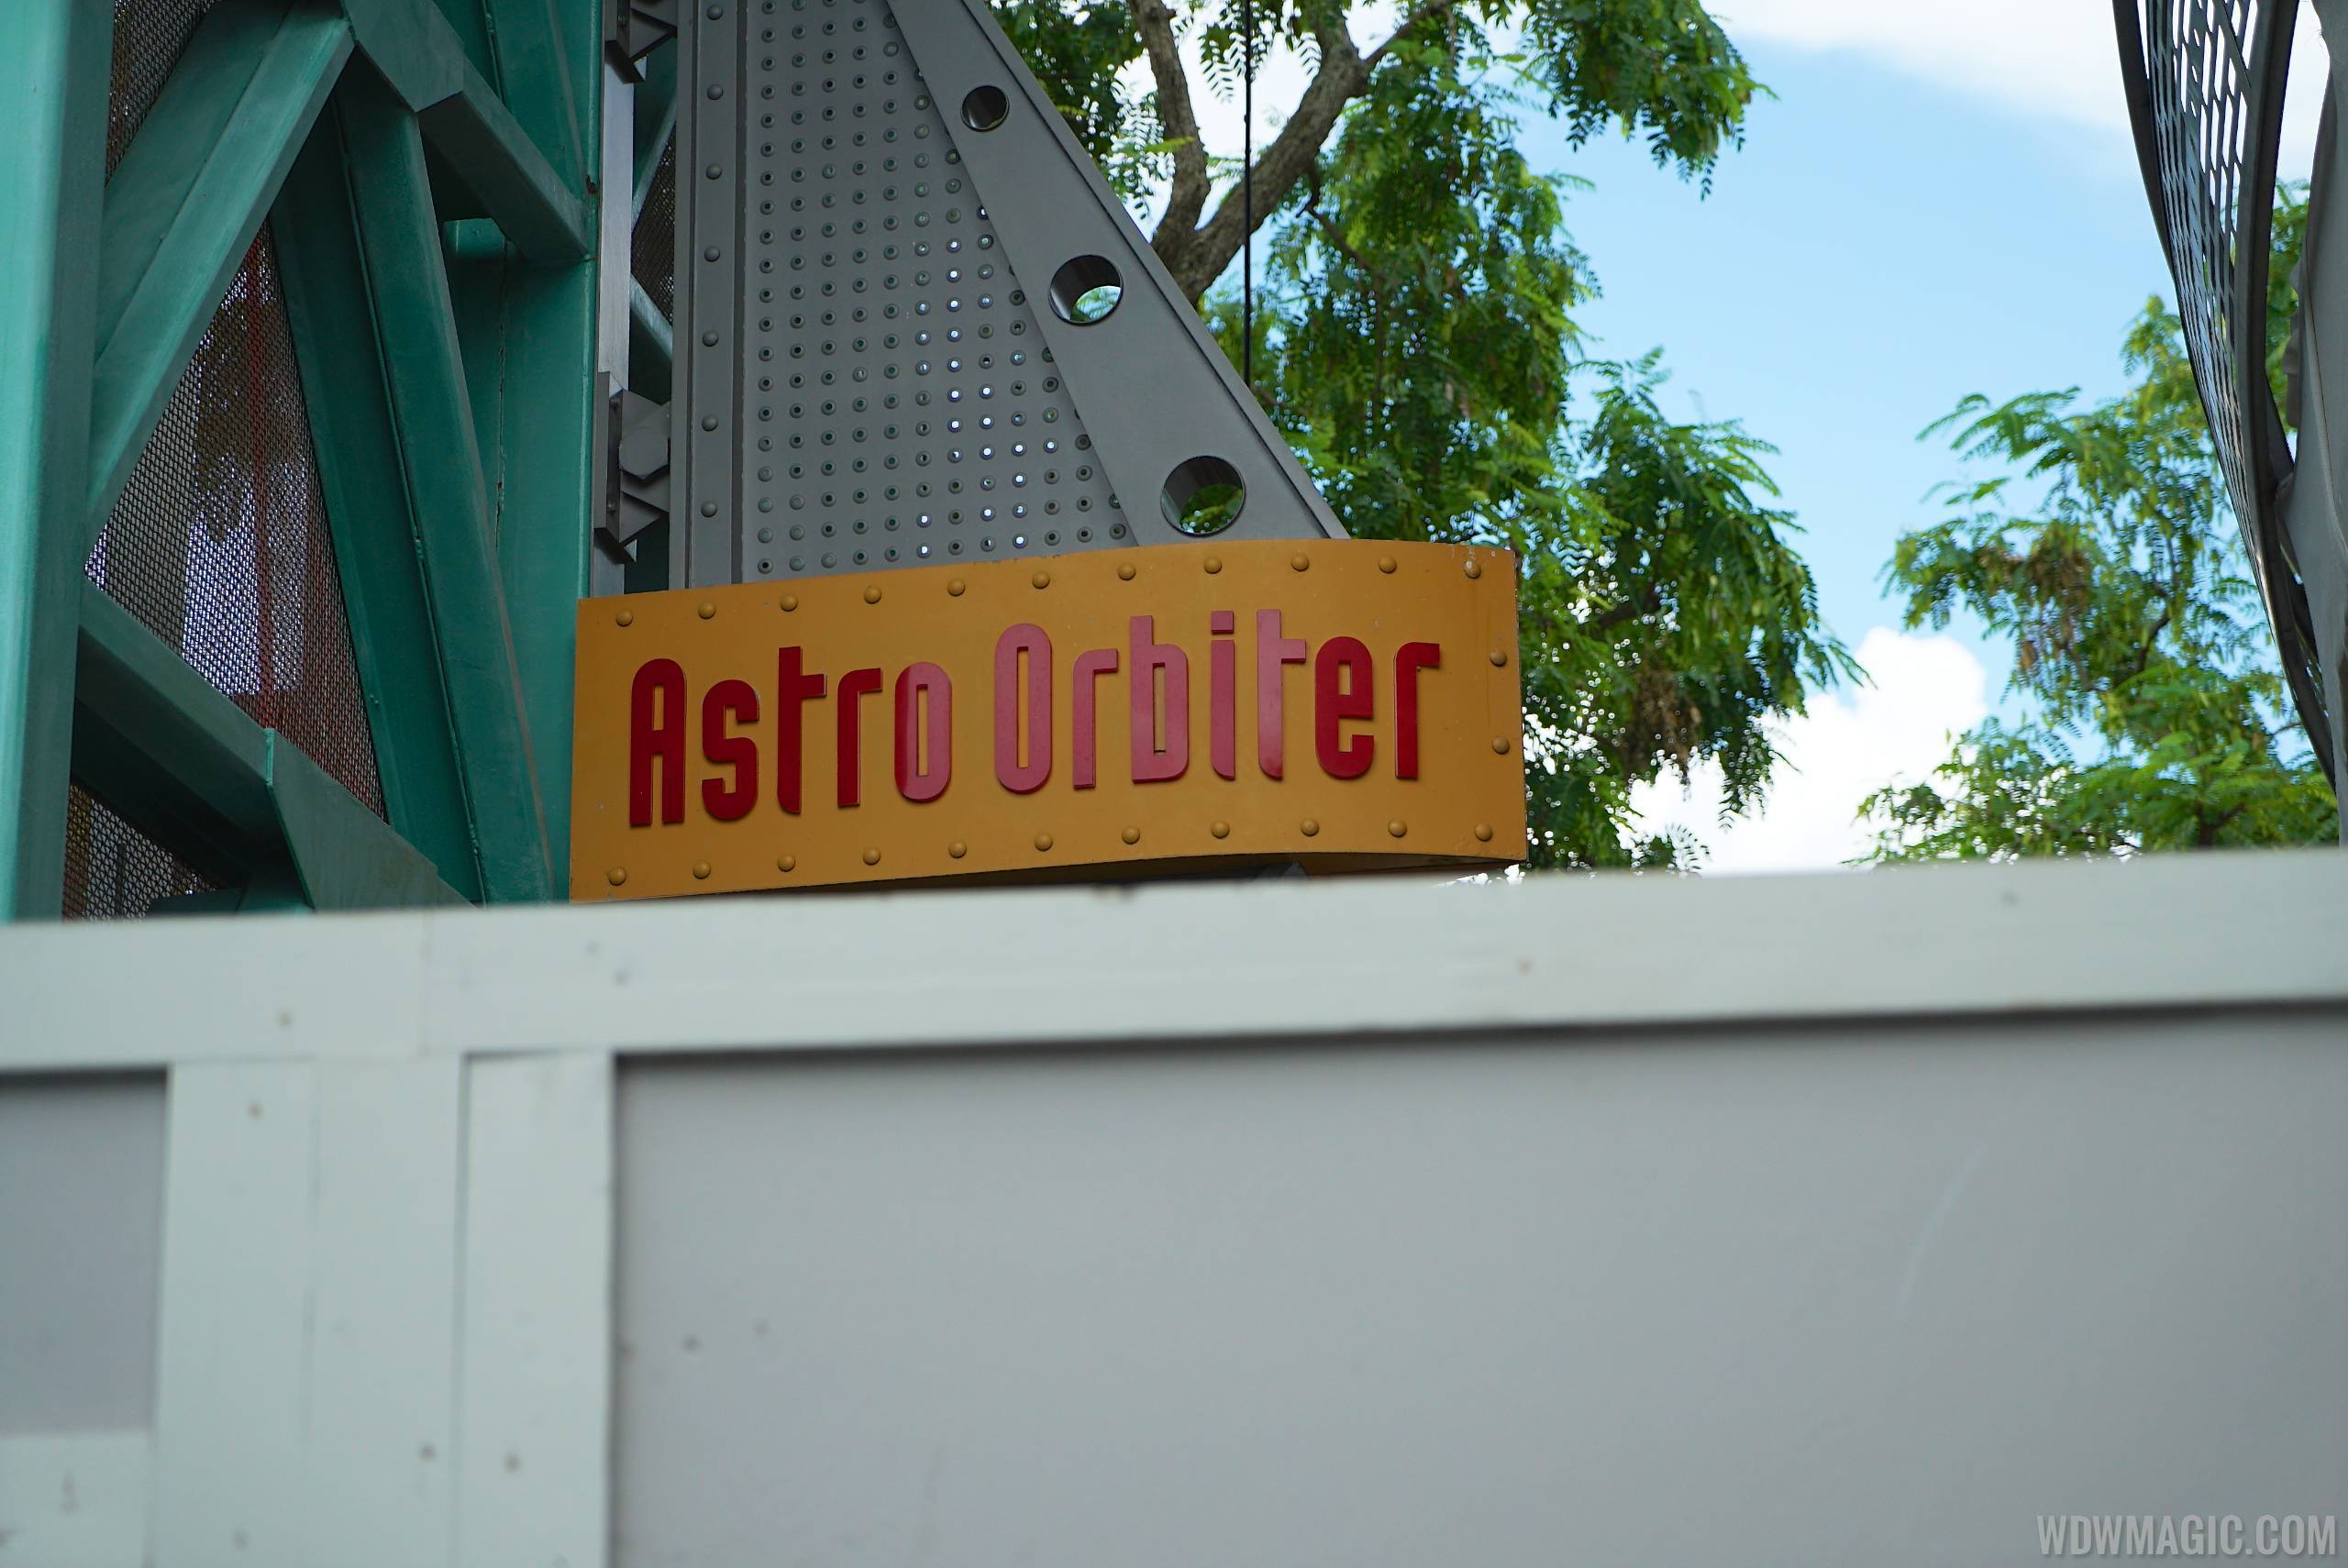 Astro Orbiter refurbishment